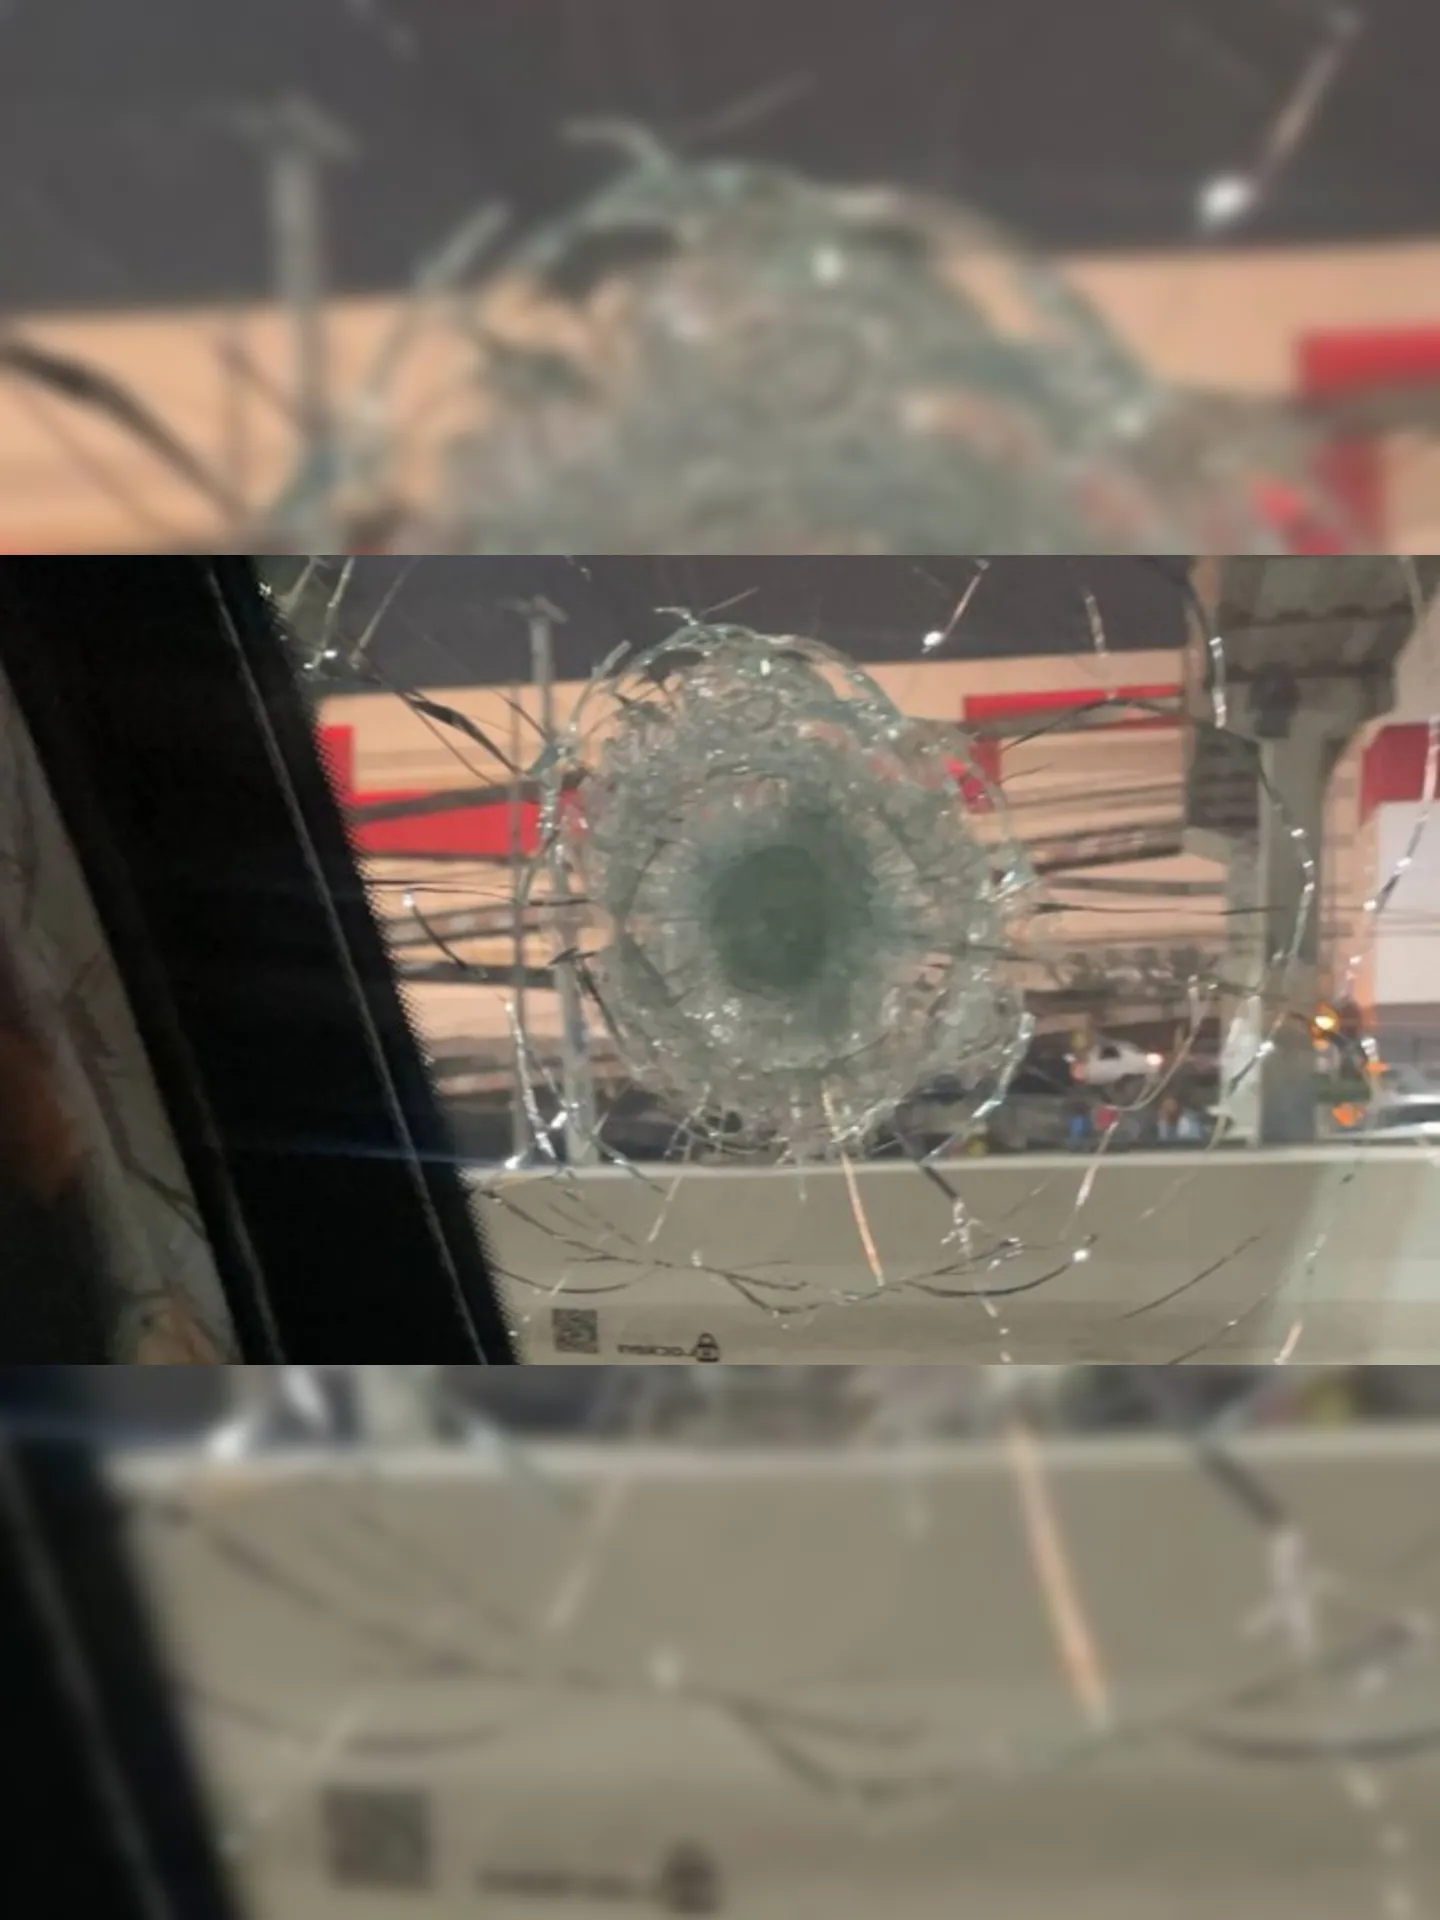 Tiros atingiram o vidro da porta do lado do motorista